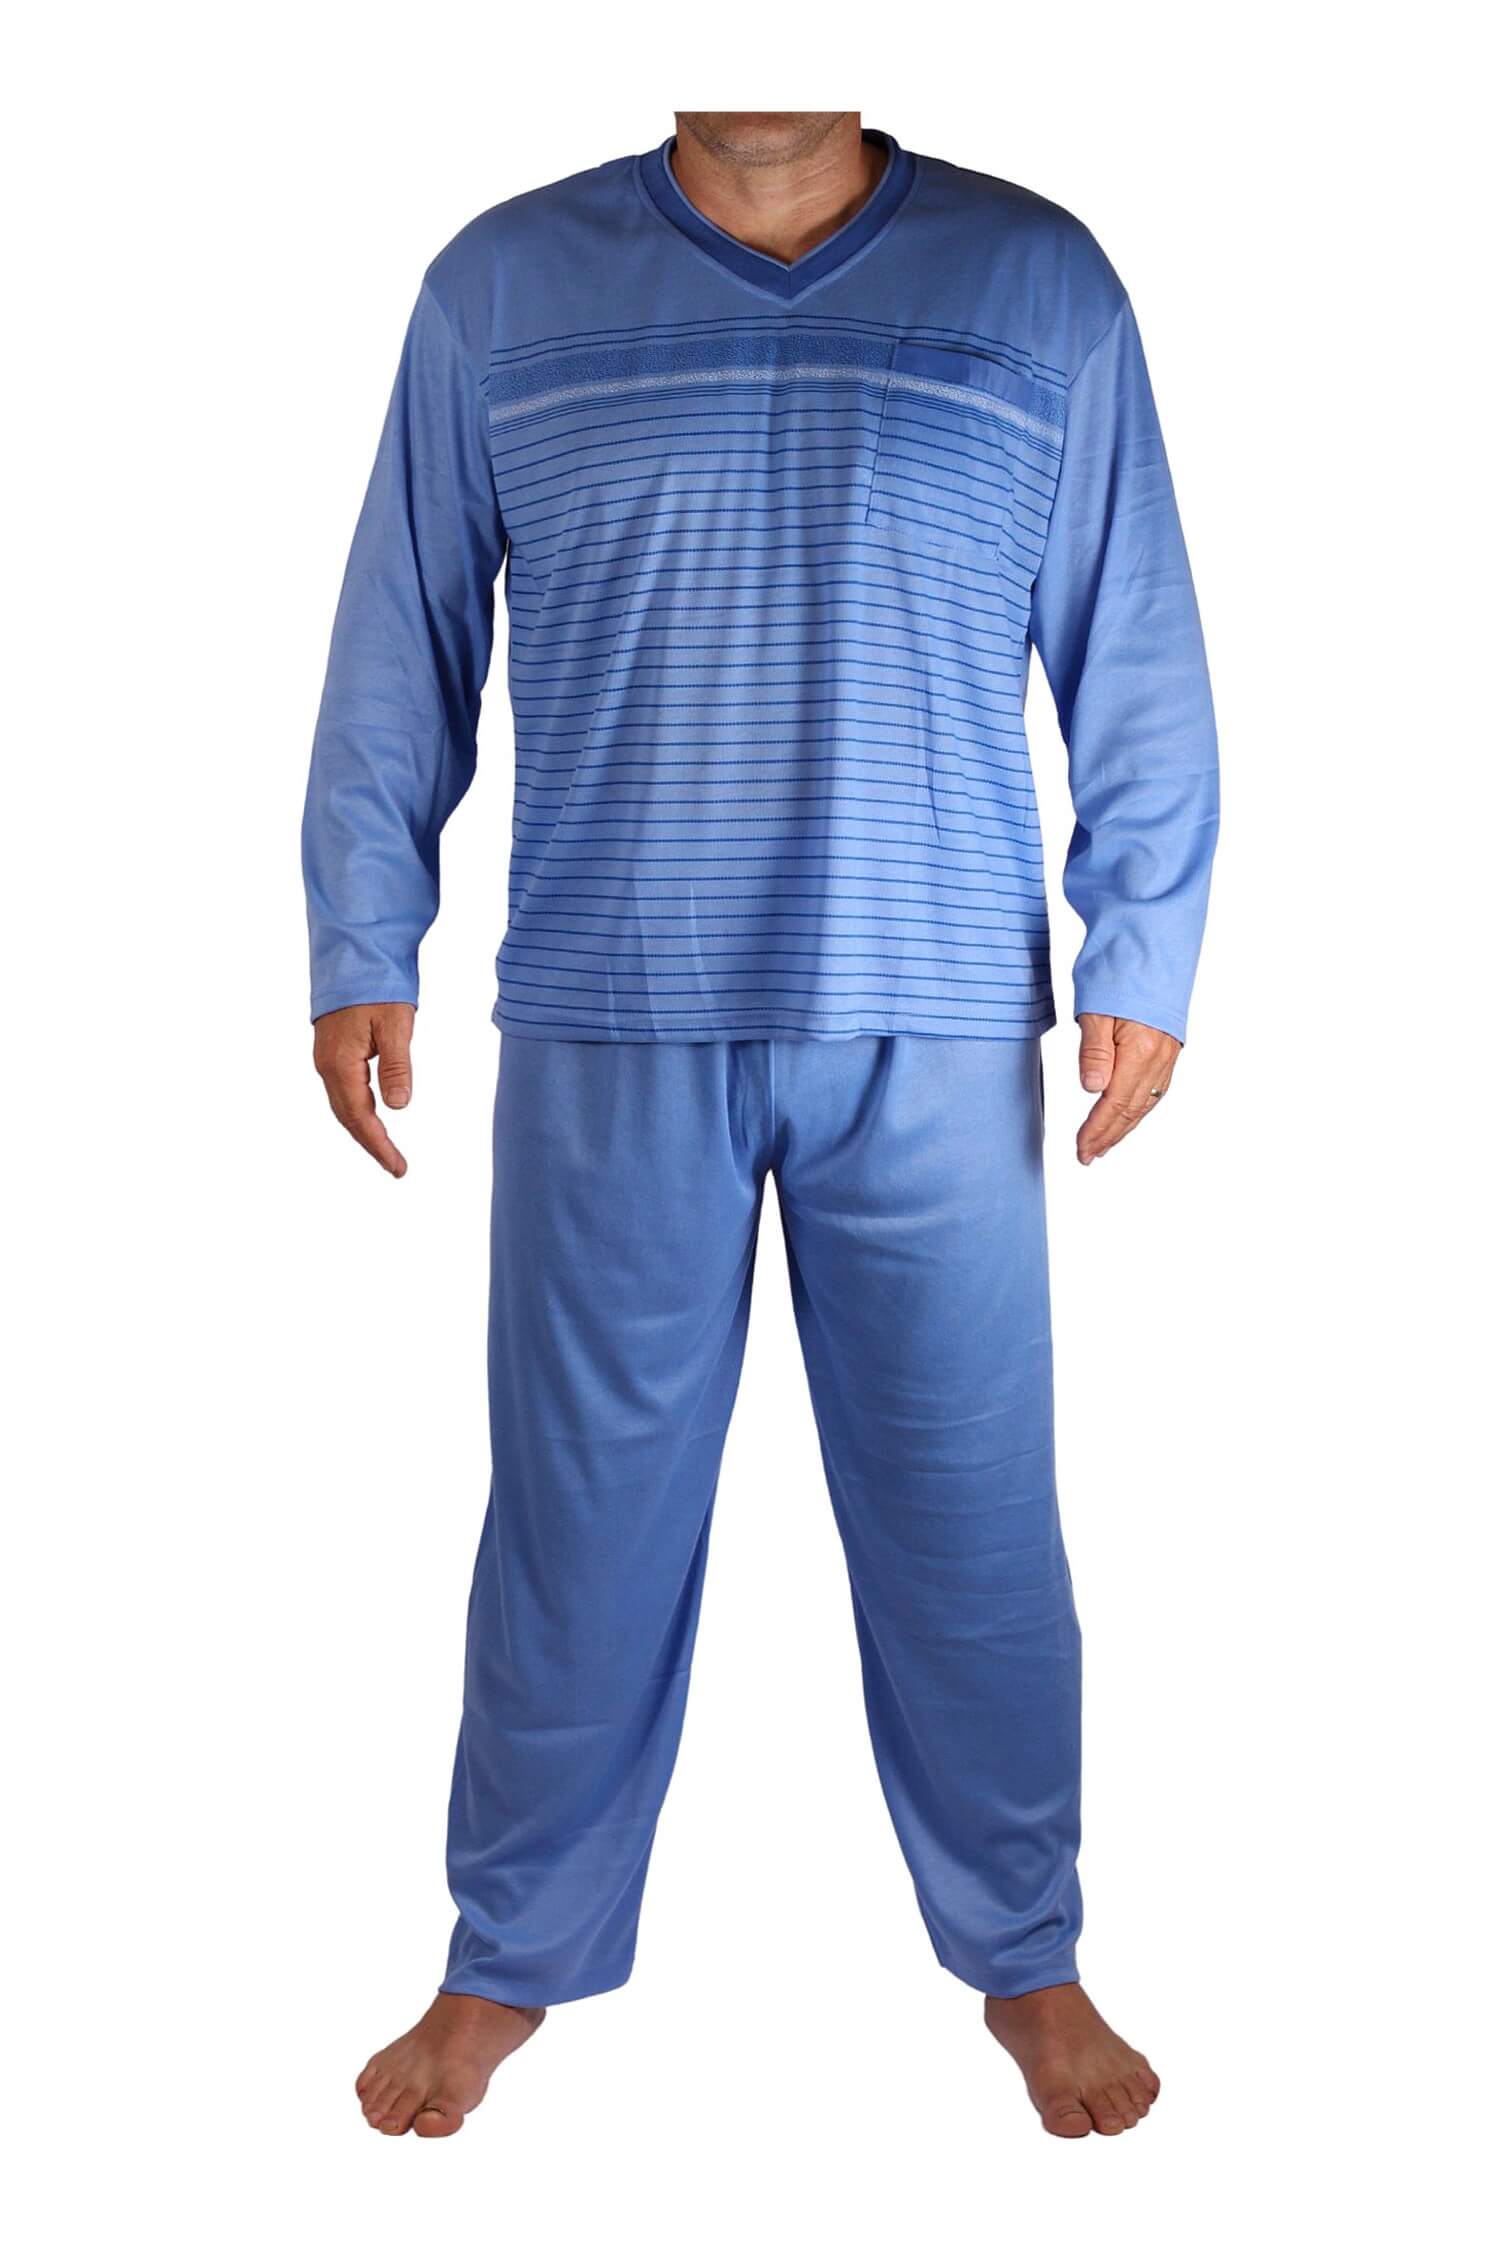 Standa pyžamo pánské dlouhé V2401 XXL světle modrá